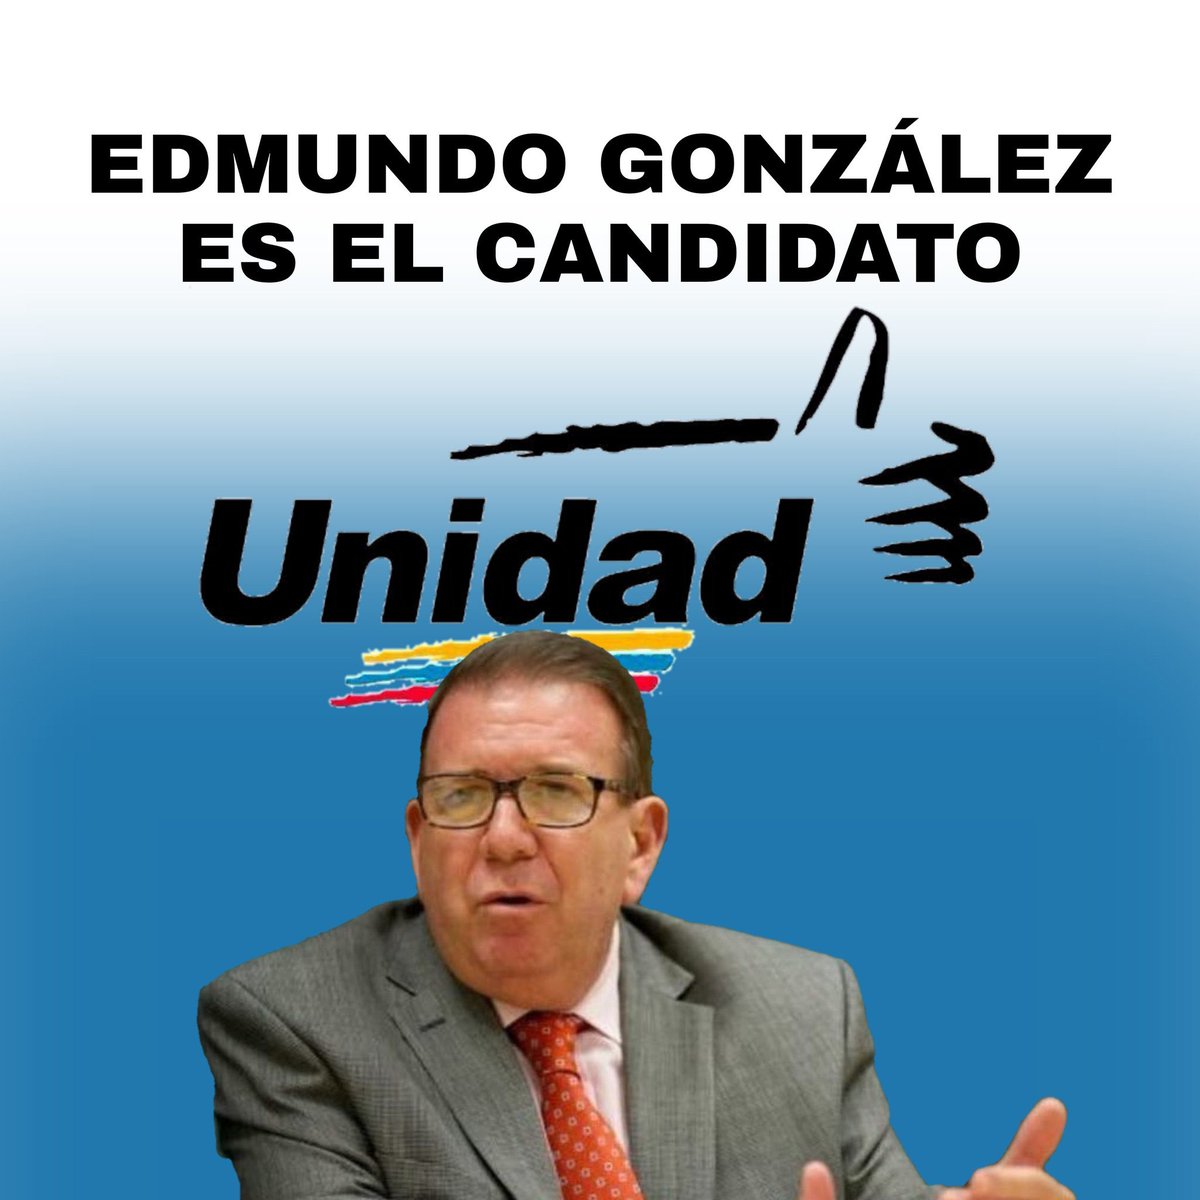 ¡Tenemos candidato! Con Edmundo González en Unidad👍🏻 el 28 de julio lo haremos posible 🇻🇪